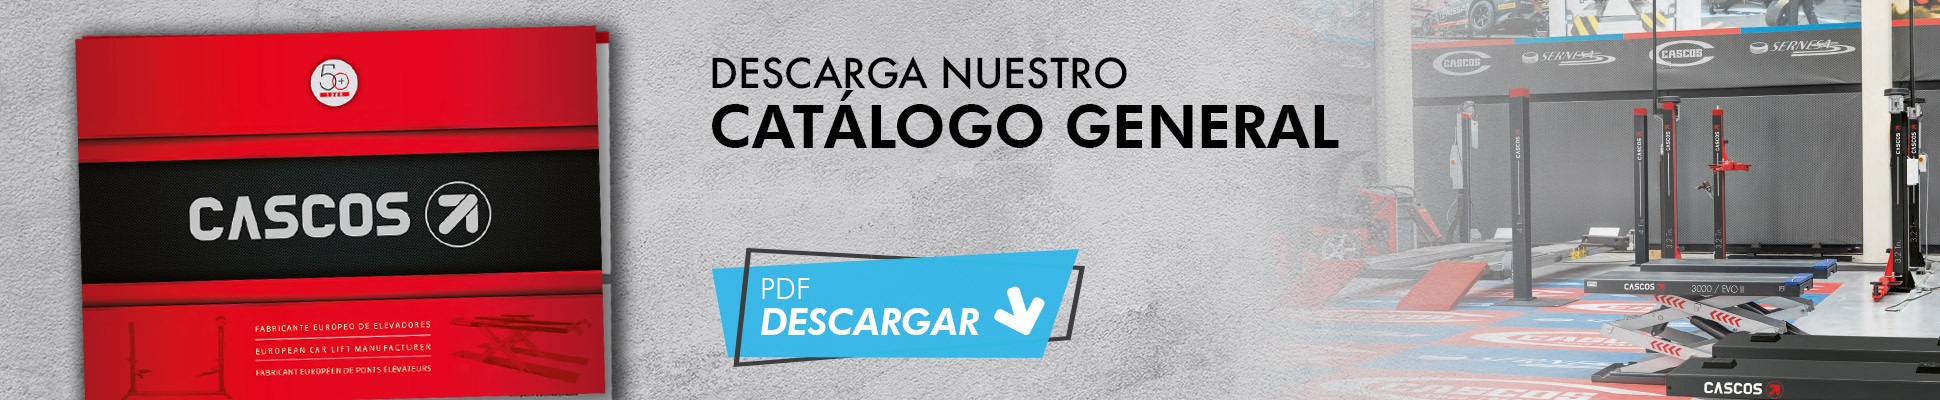 Cascos Maquinaria - DESCARGUE NUESTRO CATALOGO GENERAL 2018 - 2019